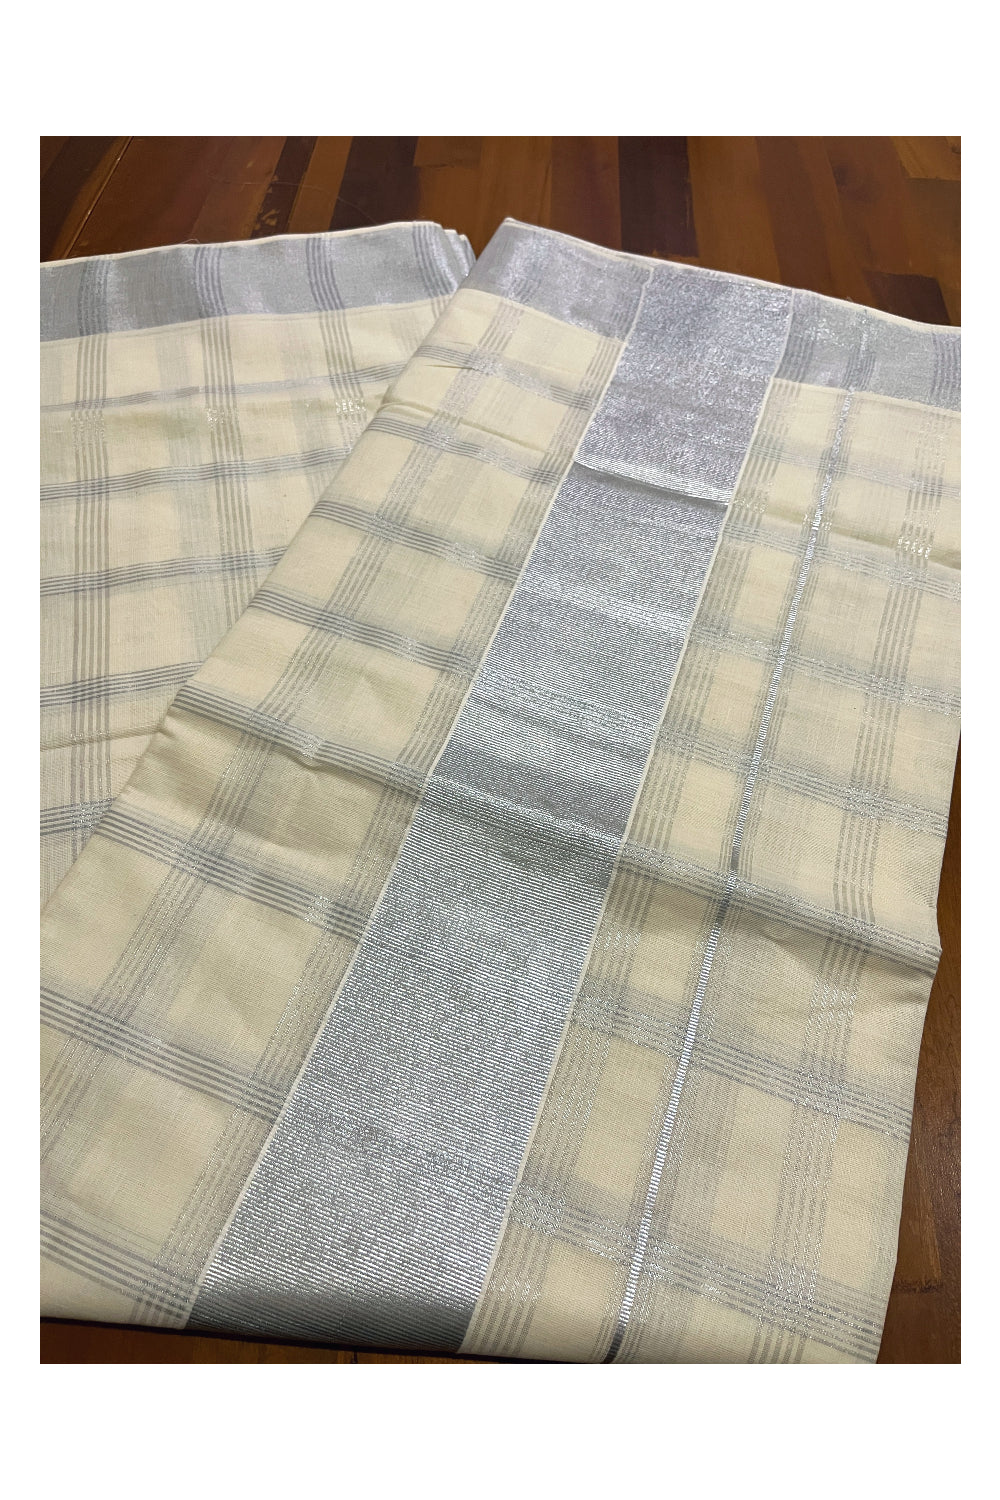 Pure Cotton Kerala Saree with Silver Kasavu Check Designs Across Body (Onam Saree 2023)